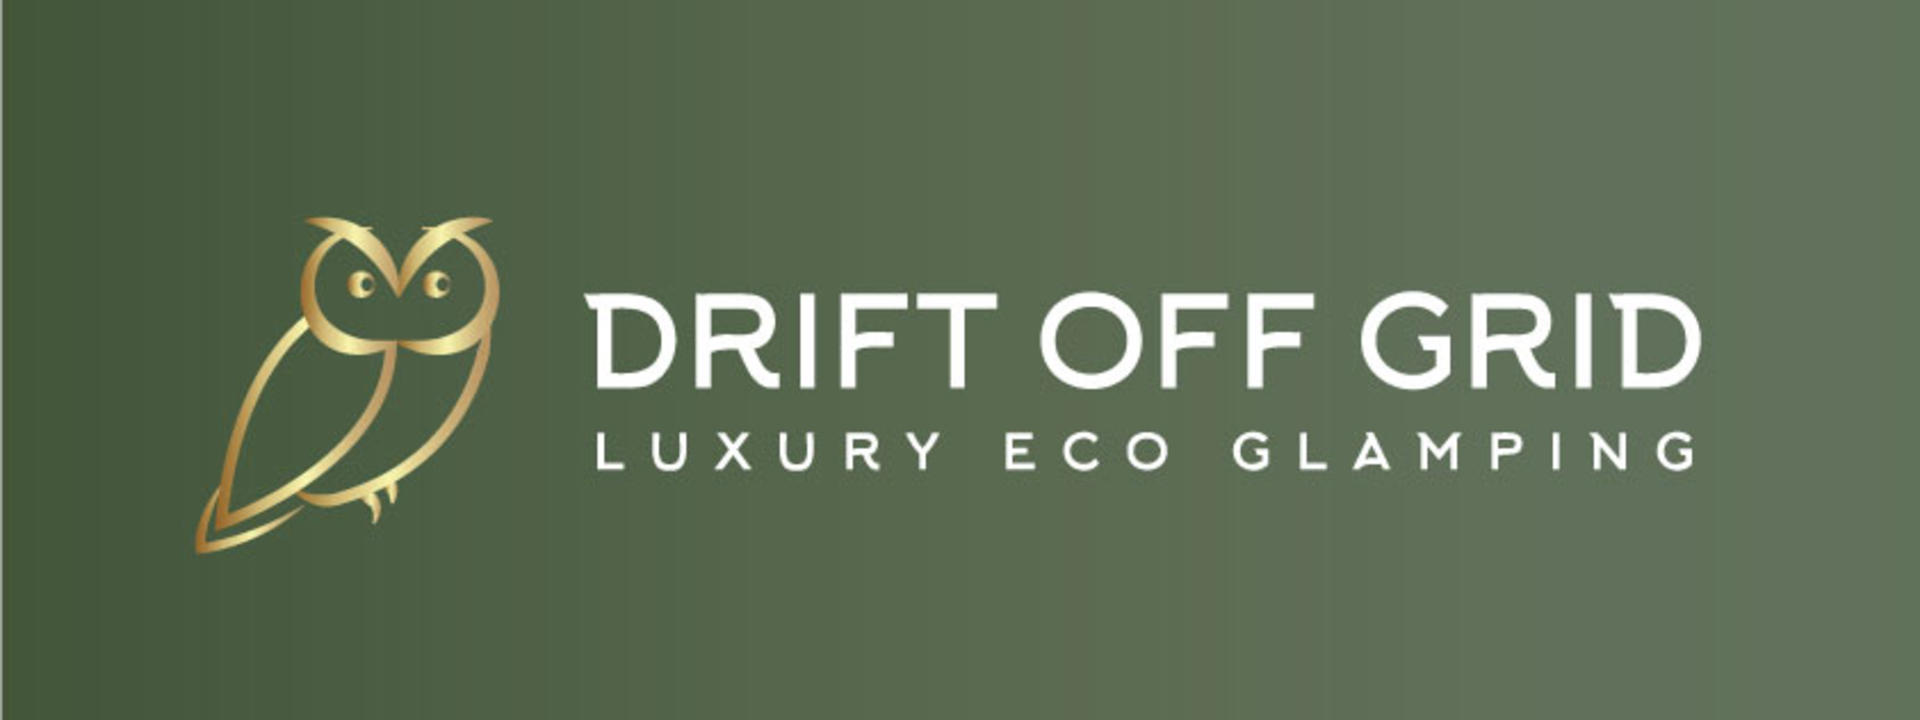 Drift-Off-Grid-Logo-Green&Gold.jpg